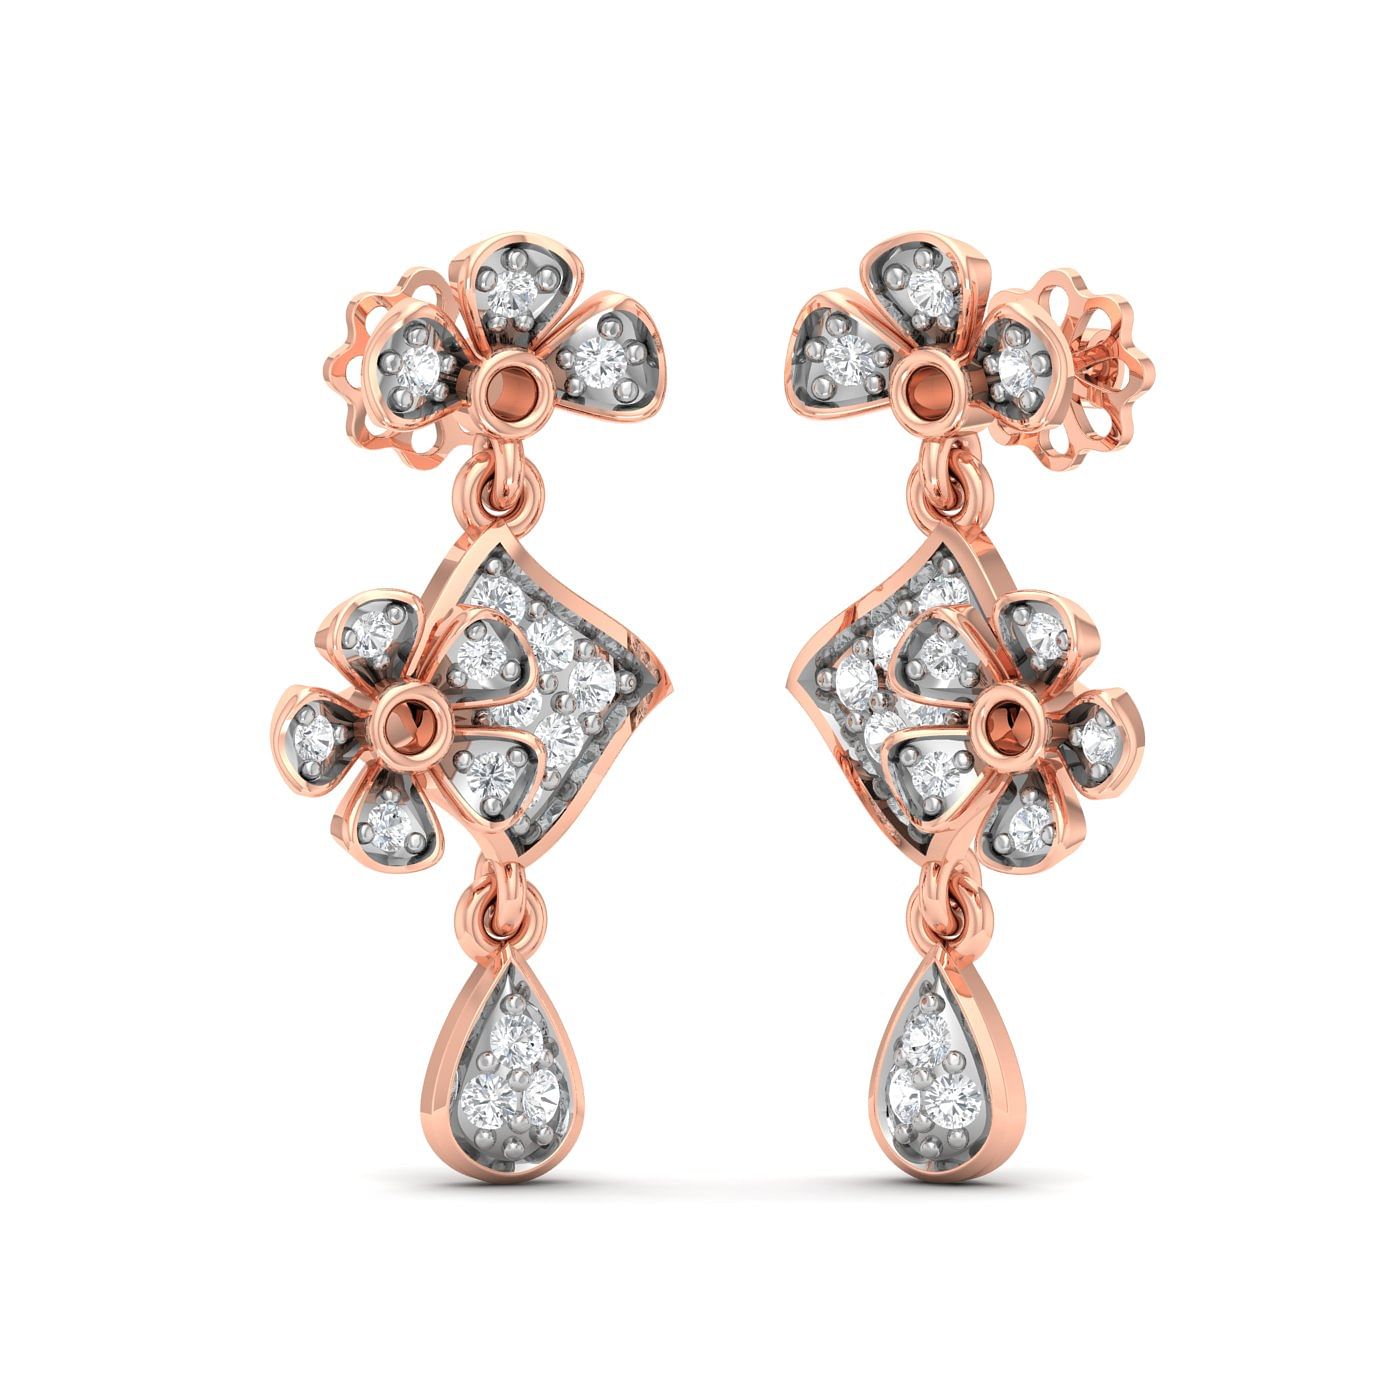 Flower style drop diamond earring set in rose gold